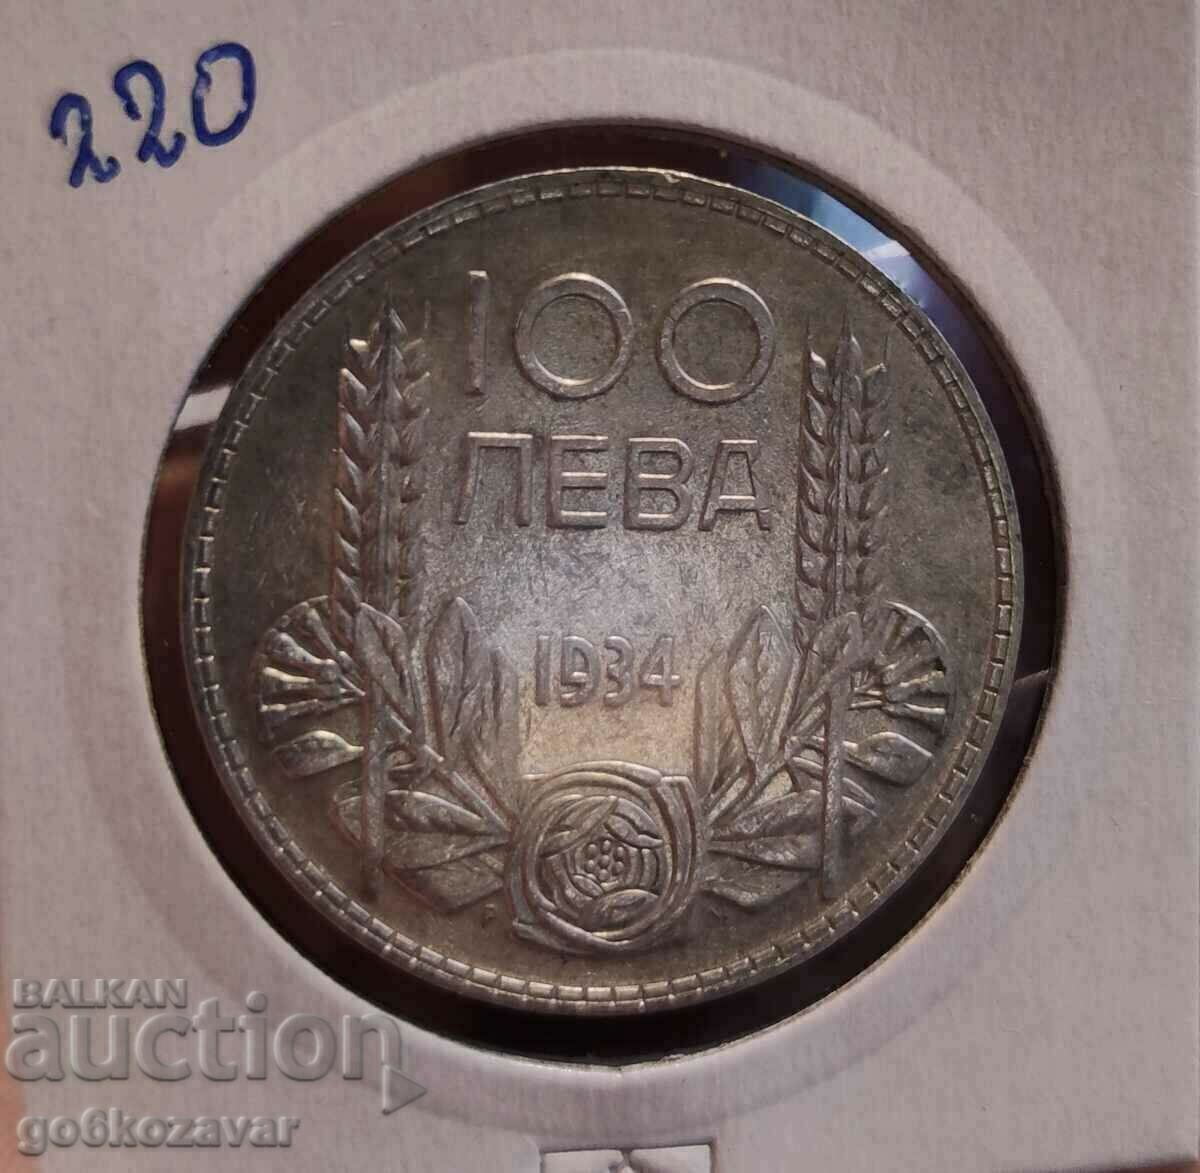 Bulgaria 100 BGN argint 1934. Frumoasă monedă pentru colecție!